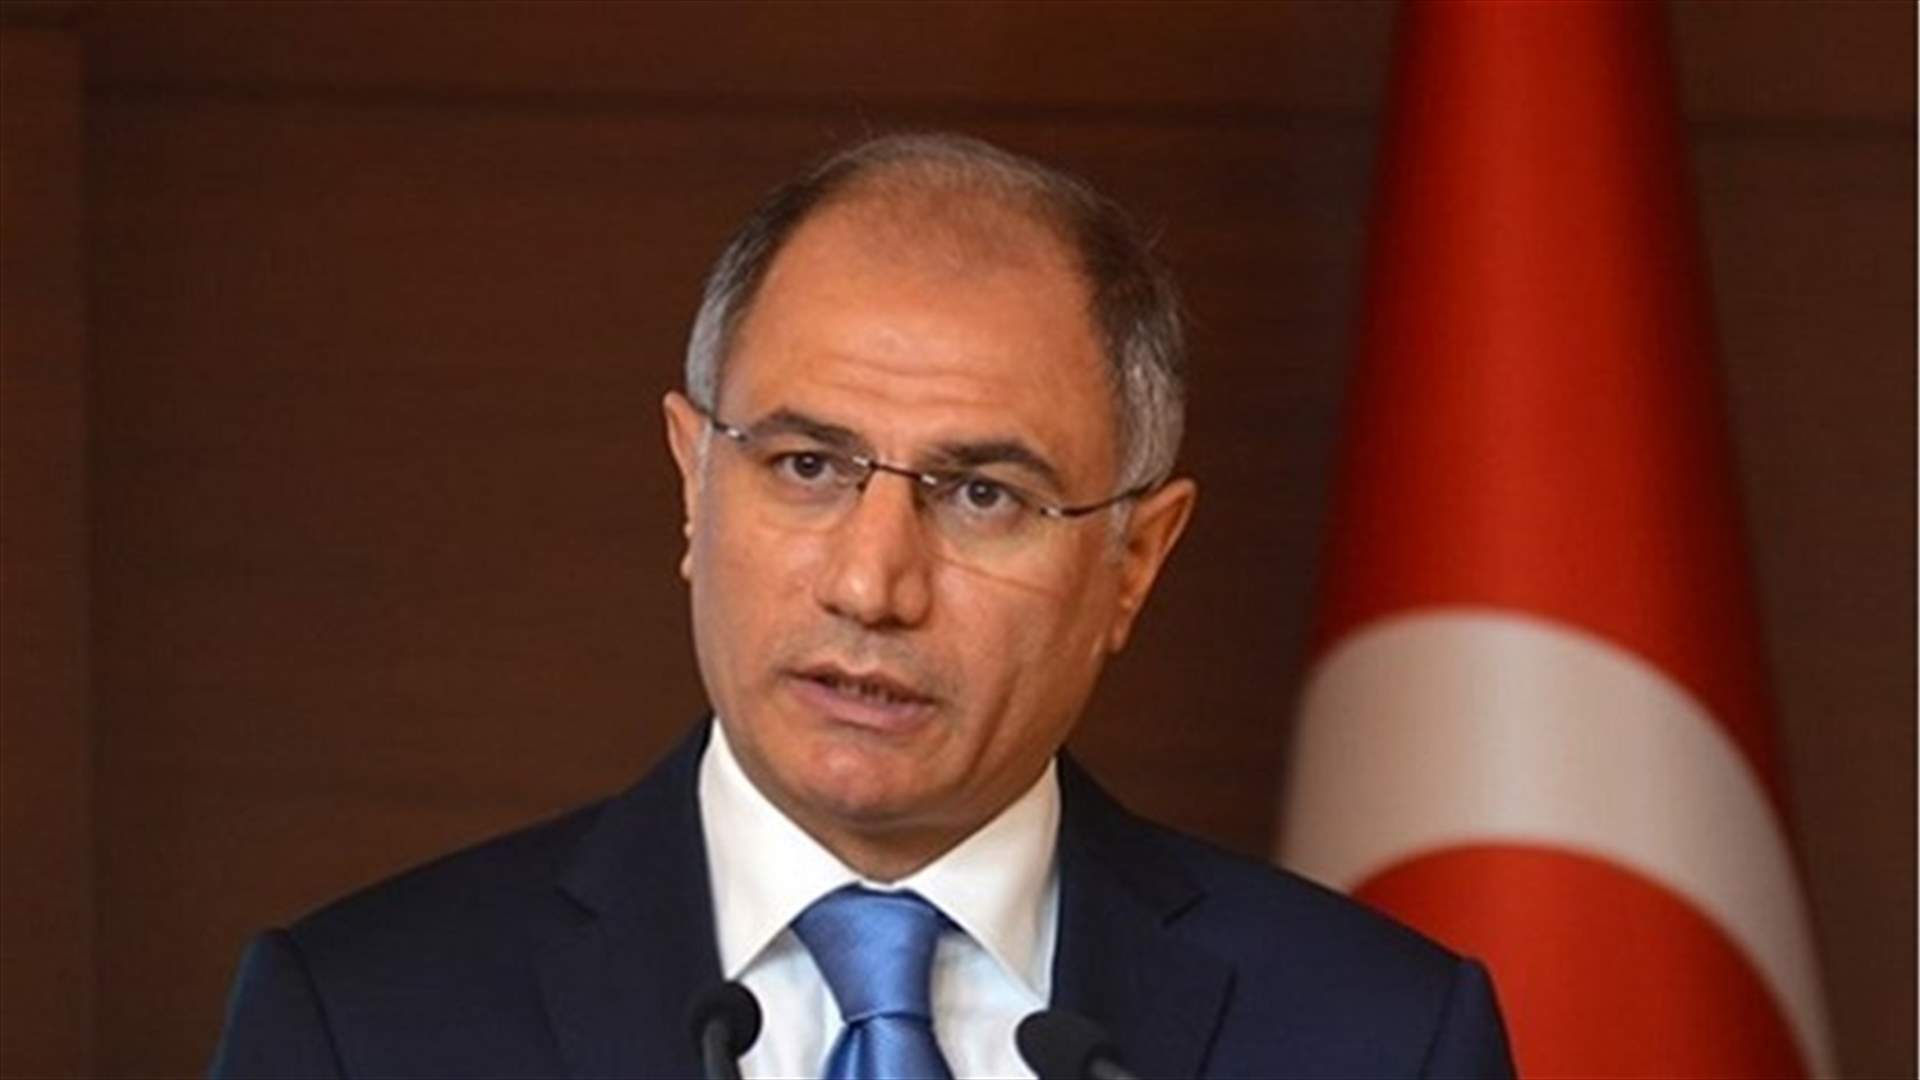 استقالة وزير الداخلية التركي